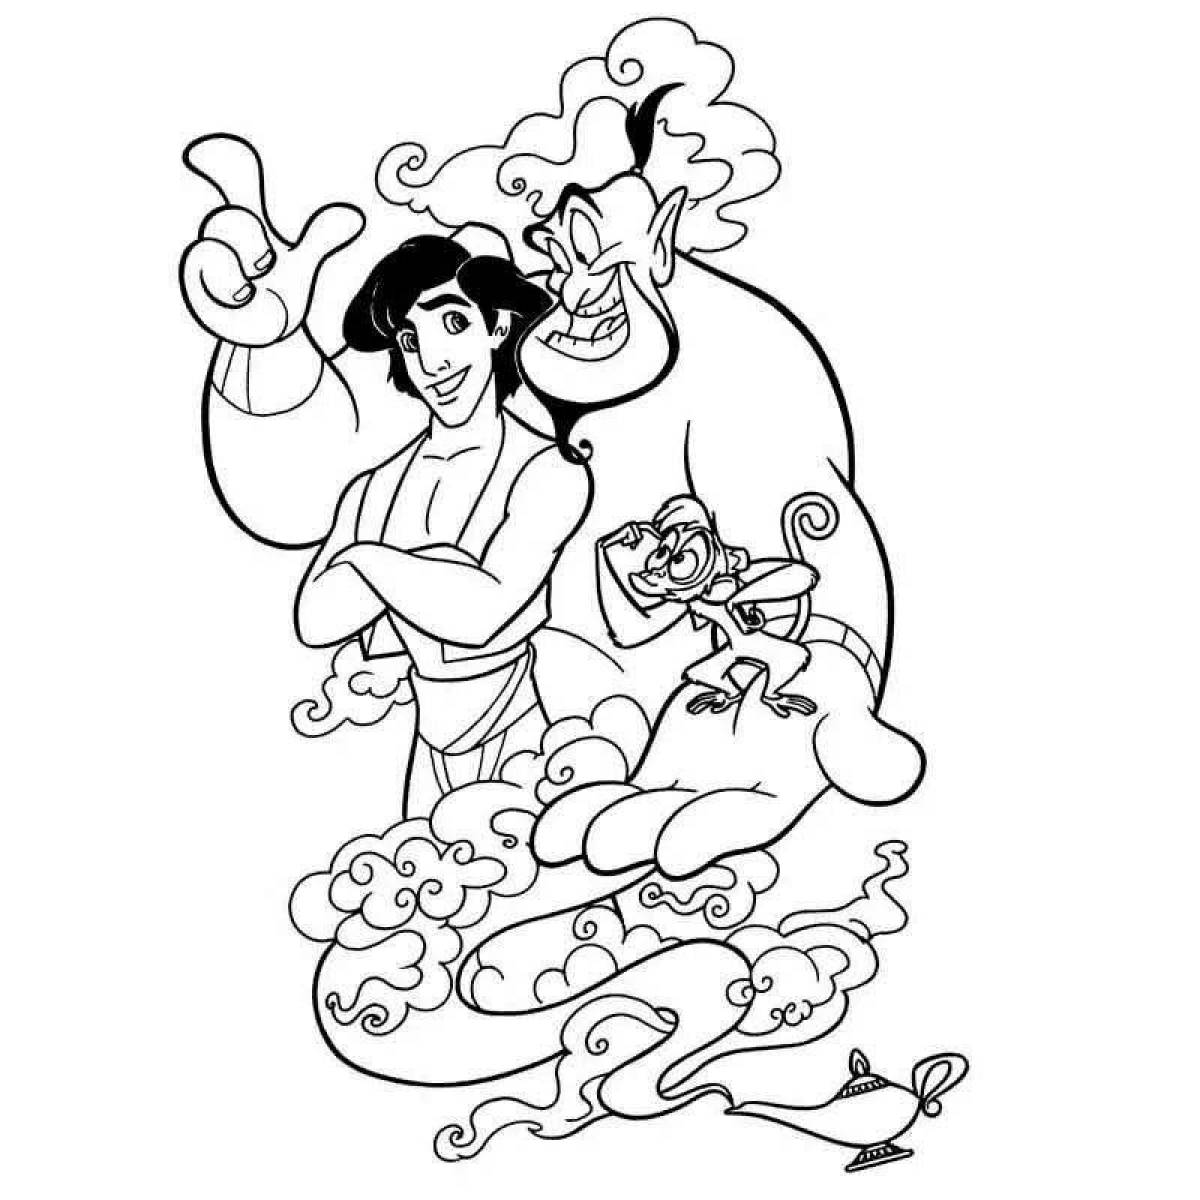 Fun Aladdin coloring book